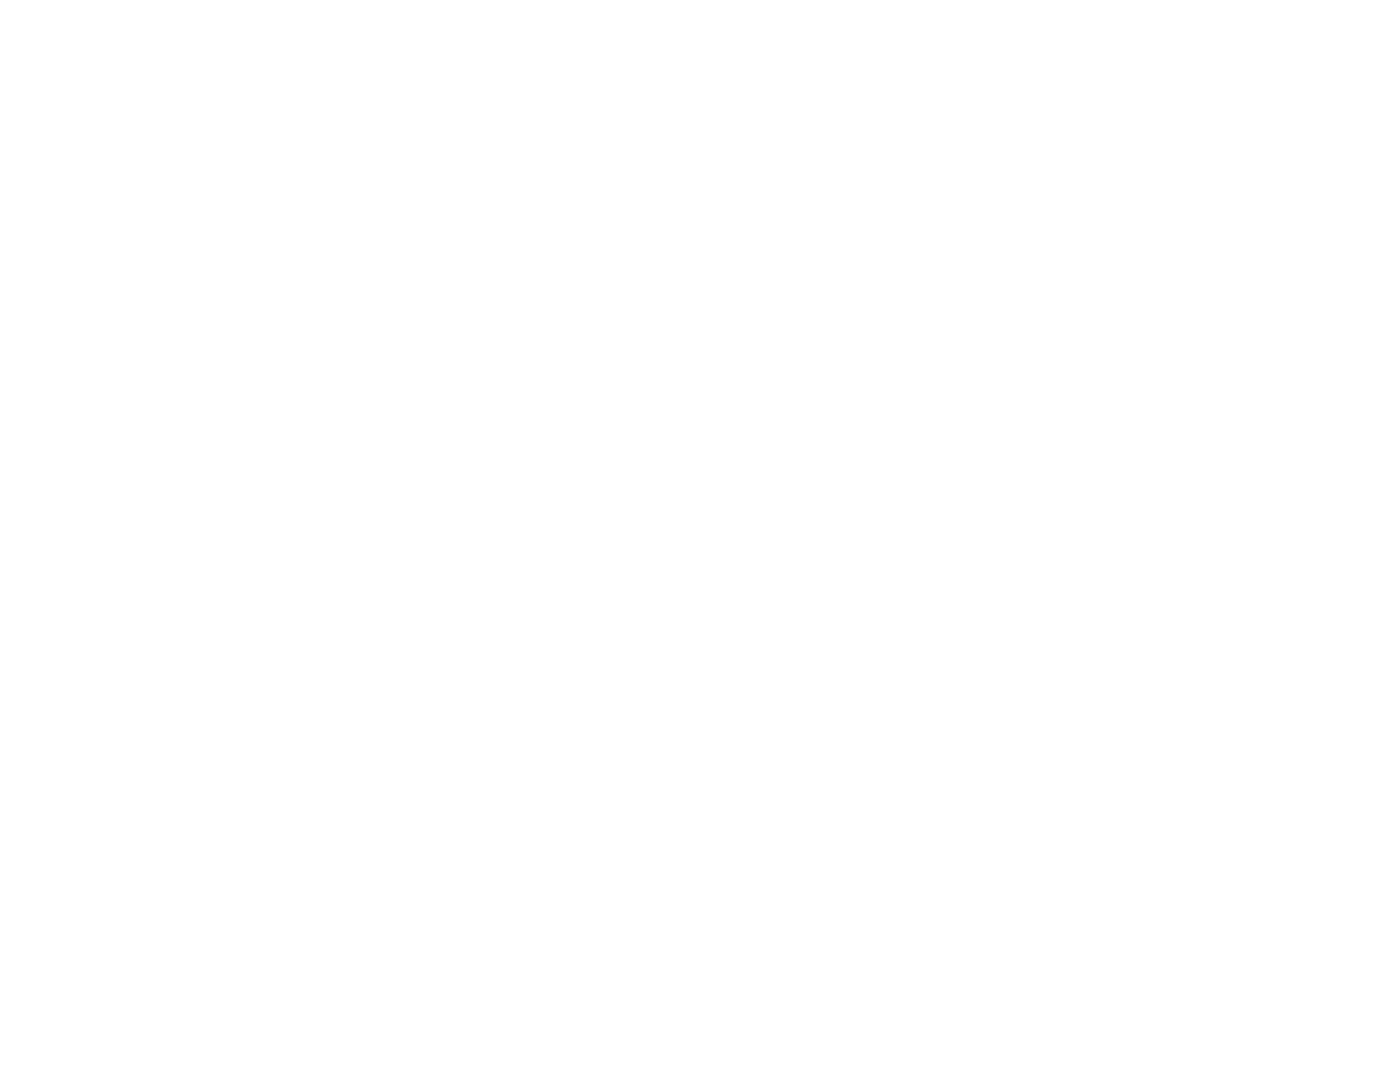 Suzuki String Academy